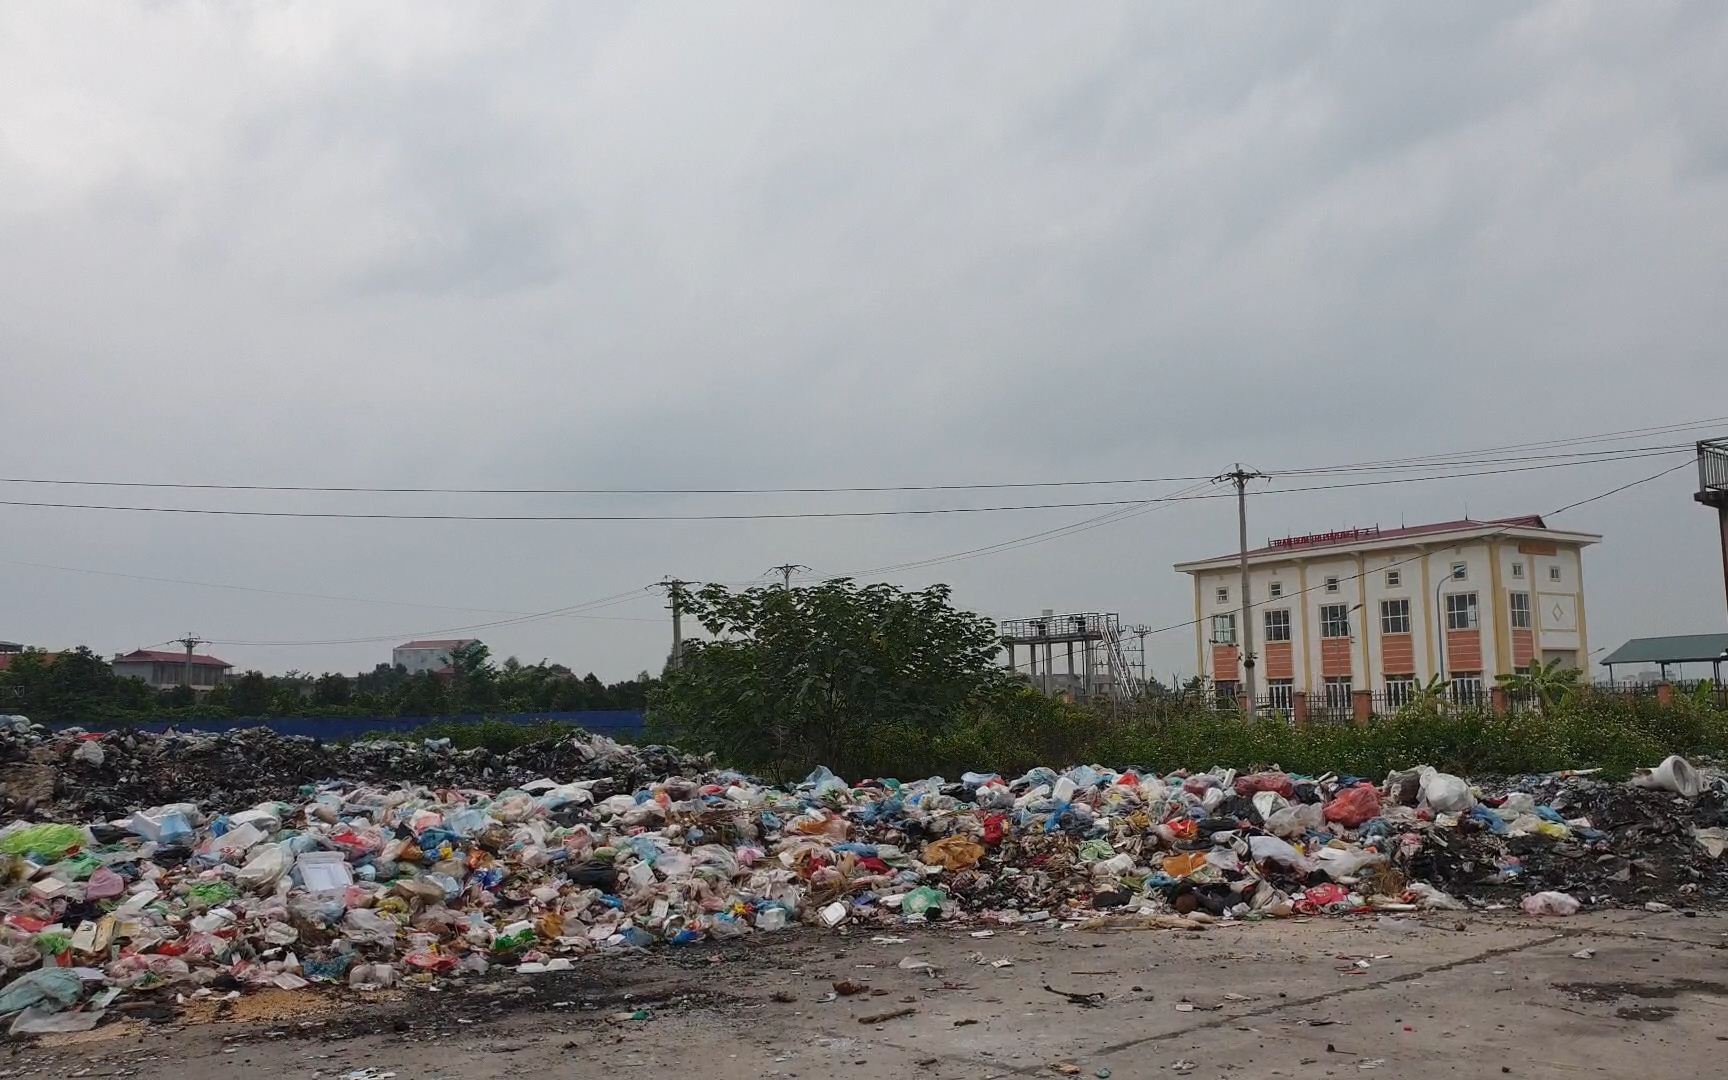 Bãi rác thải ô nhiễm dài hàng trăm mét trên đường gom cao tốc Hà Nội - Bắc Giang khiến người dân lo bệnh tật